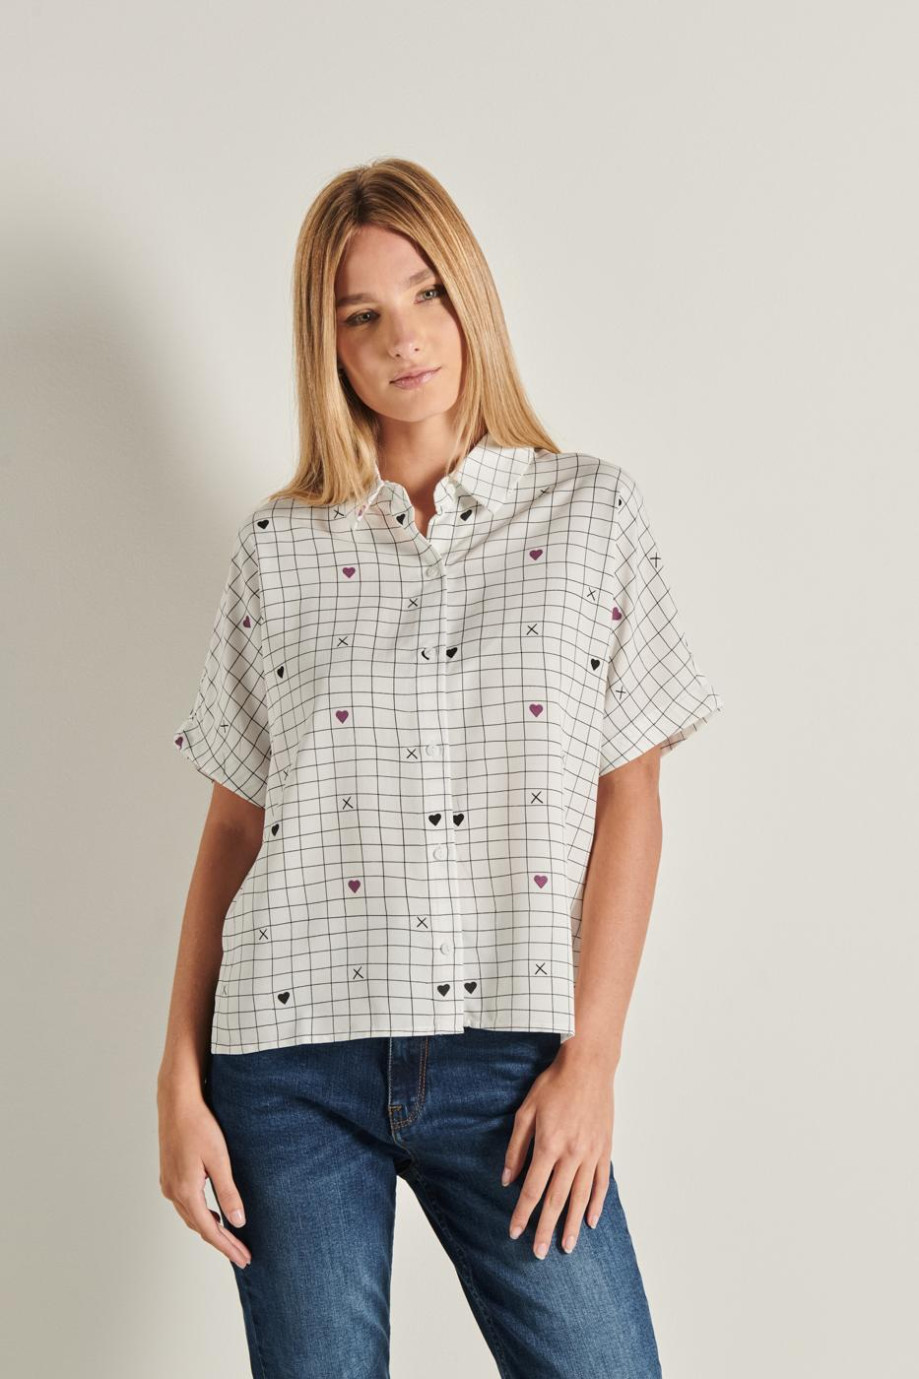 Blusa cuello camisero de hombro rodado con variedad de opciones de mini print